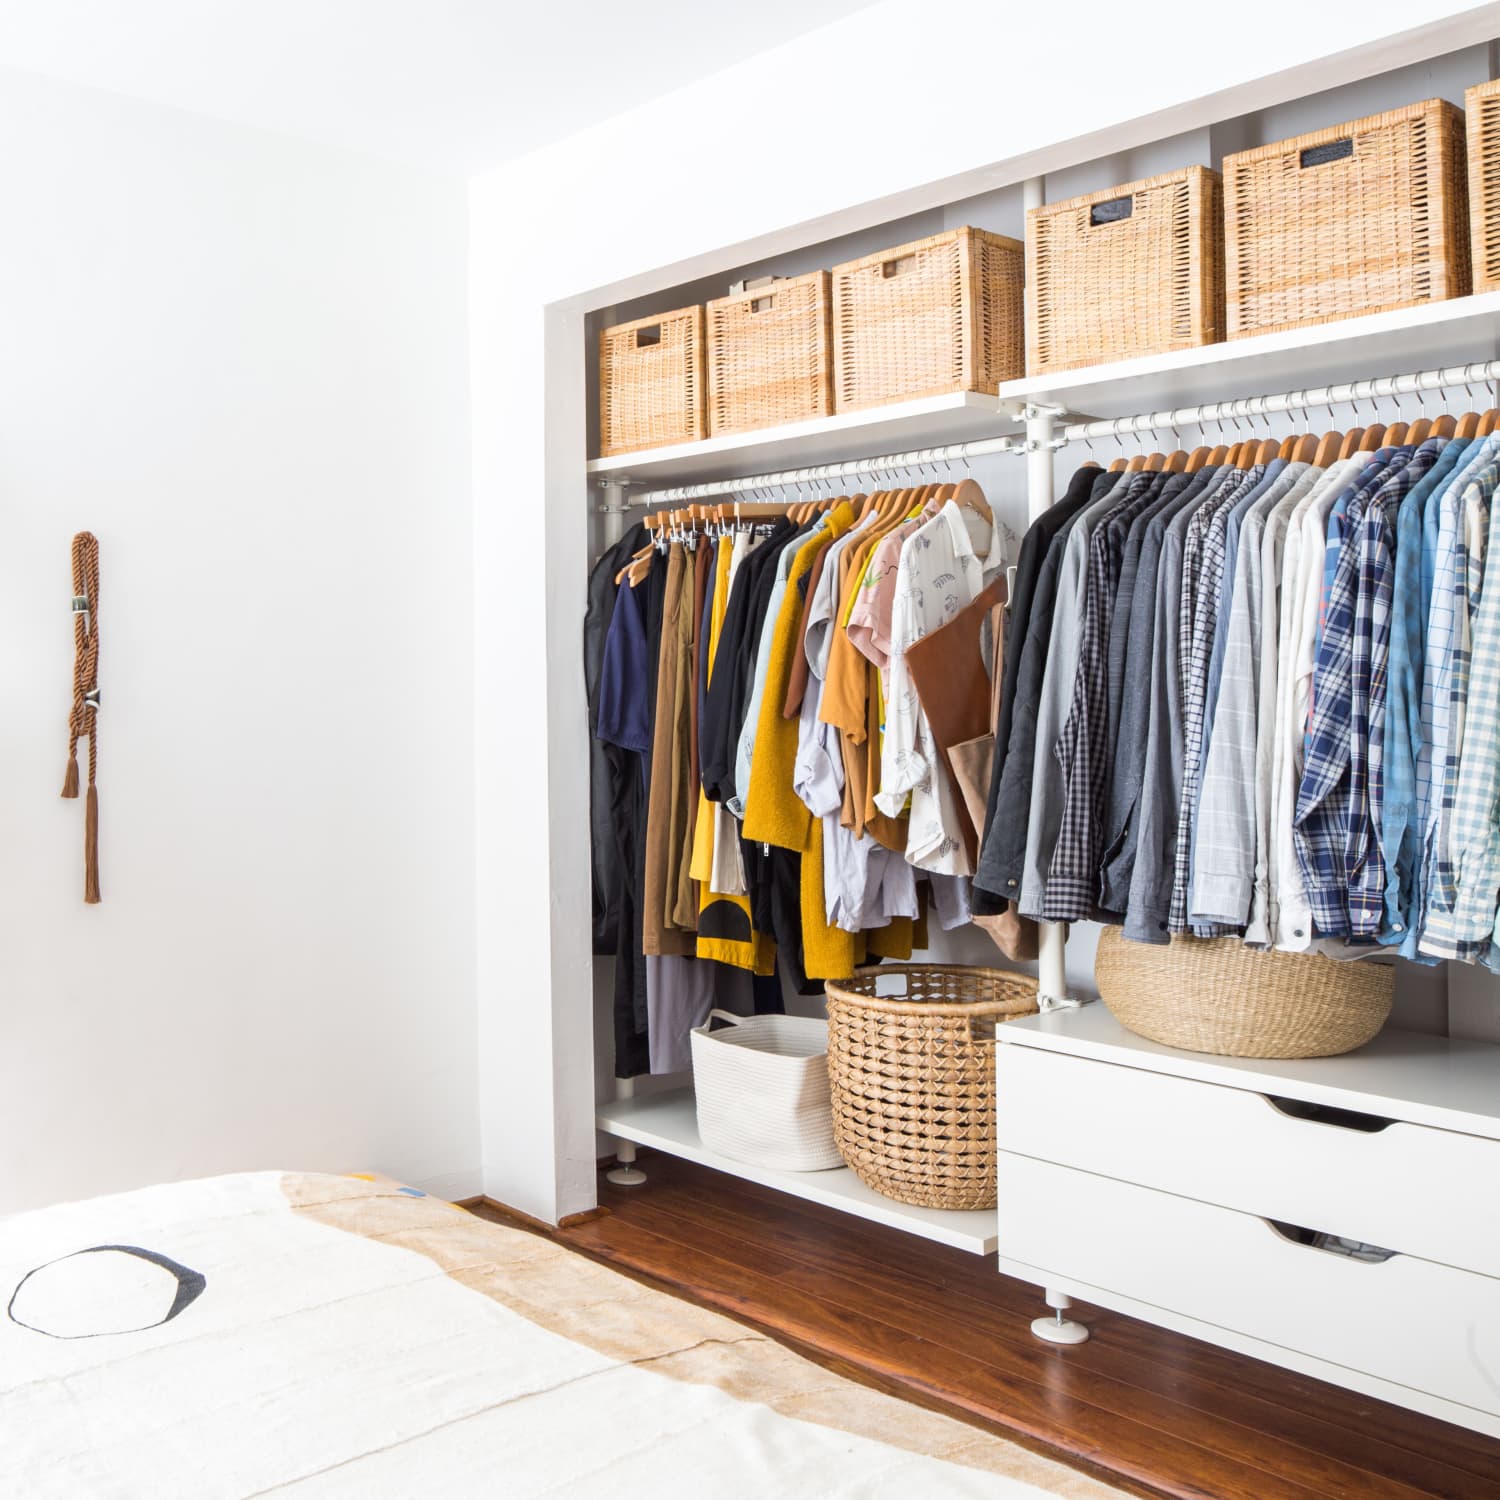 How to Make Custom Closet Shelves